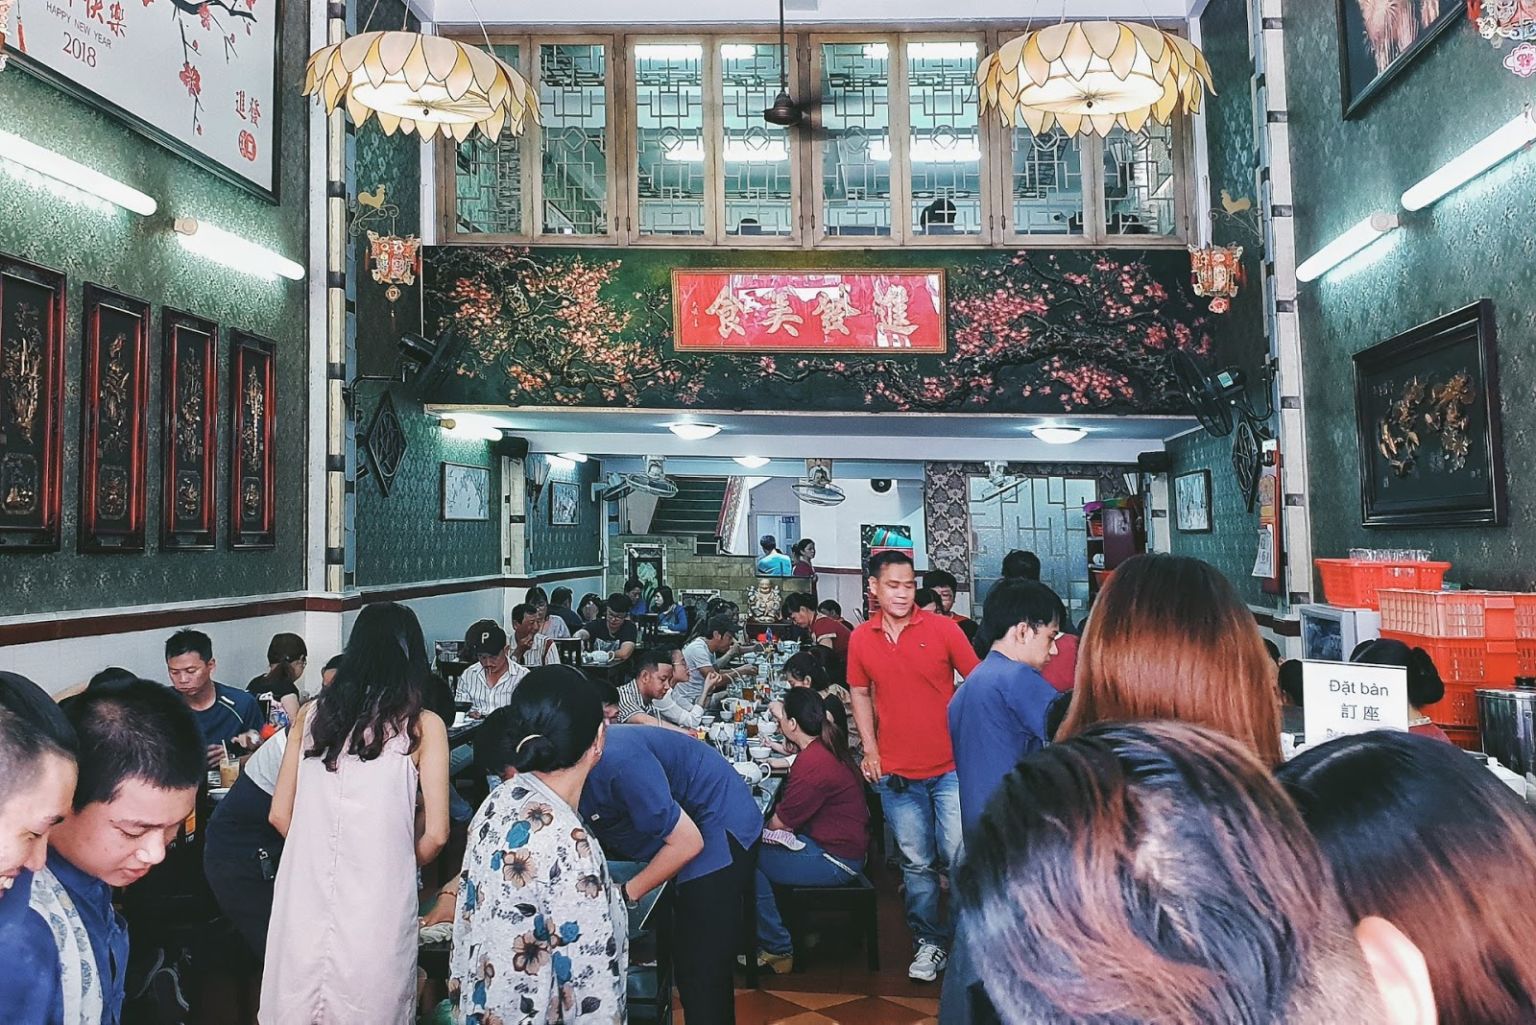 Du lịch Sài Gòn: Trải nghiệm thú vị không nên bỏ lỡ